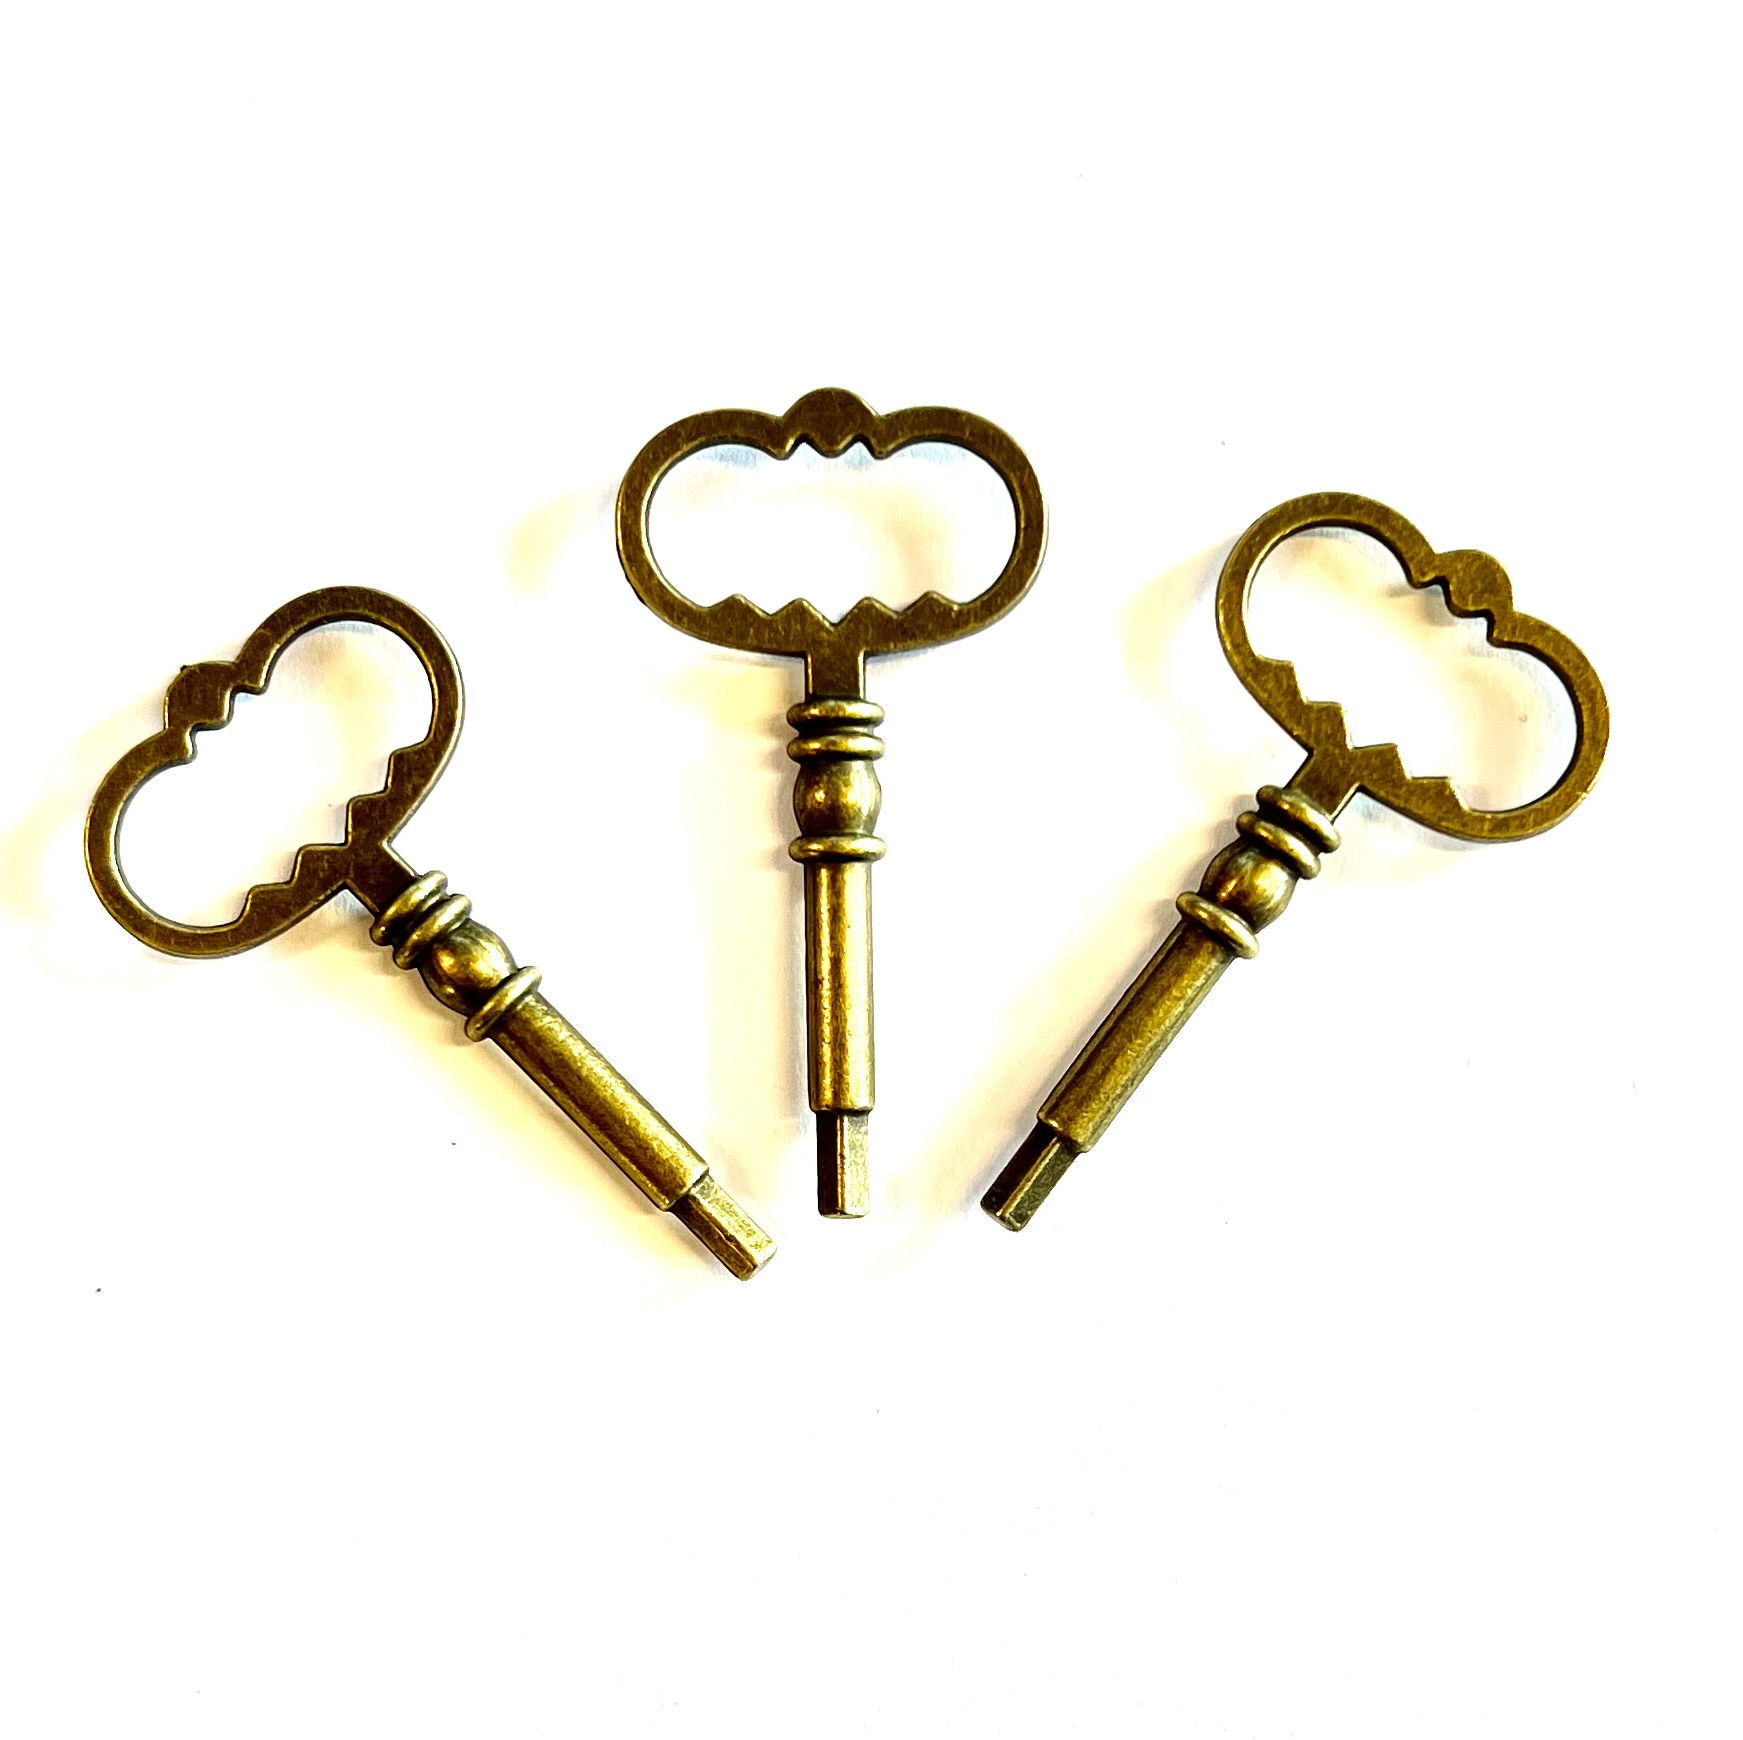 Steampunk Mini Schlüssel, 4er Set, bronzefarben für den Bastler